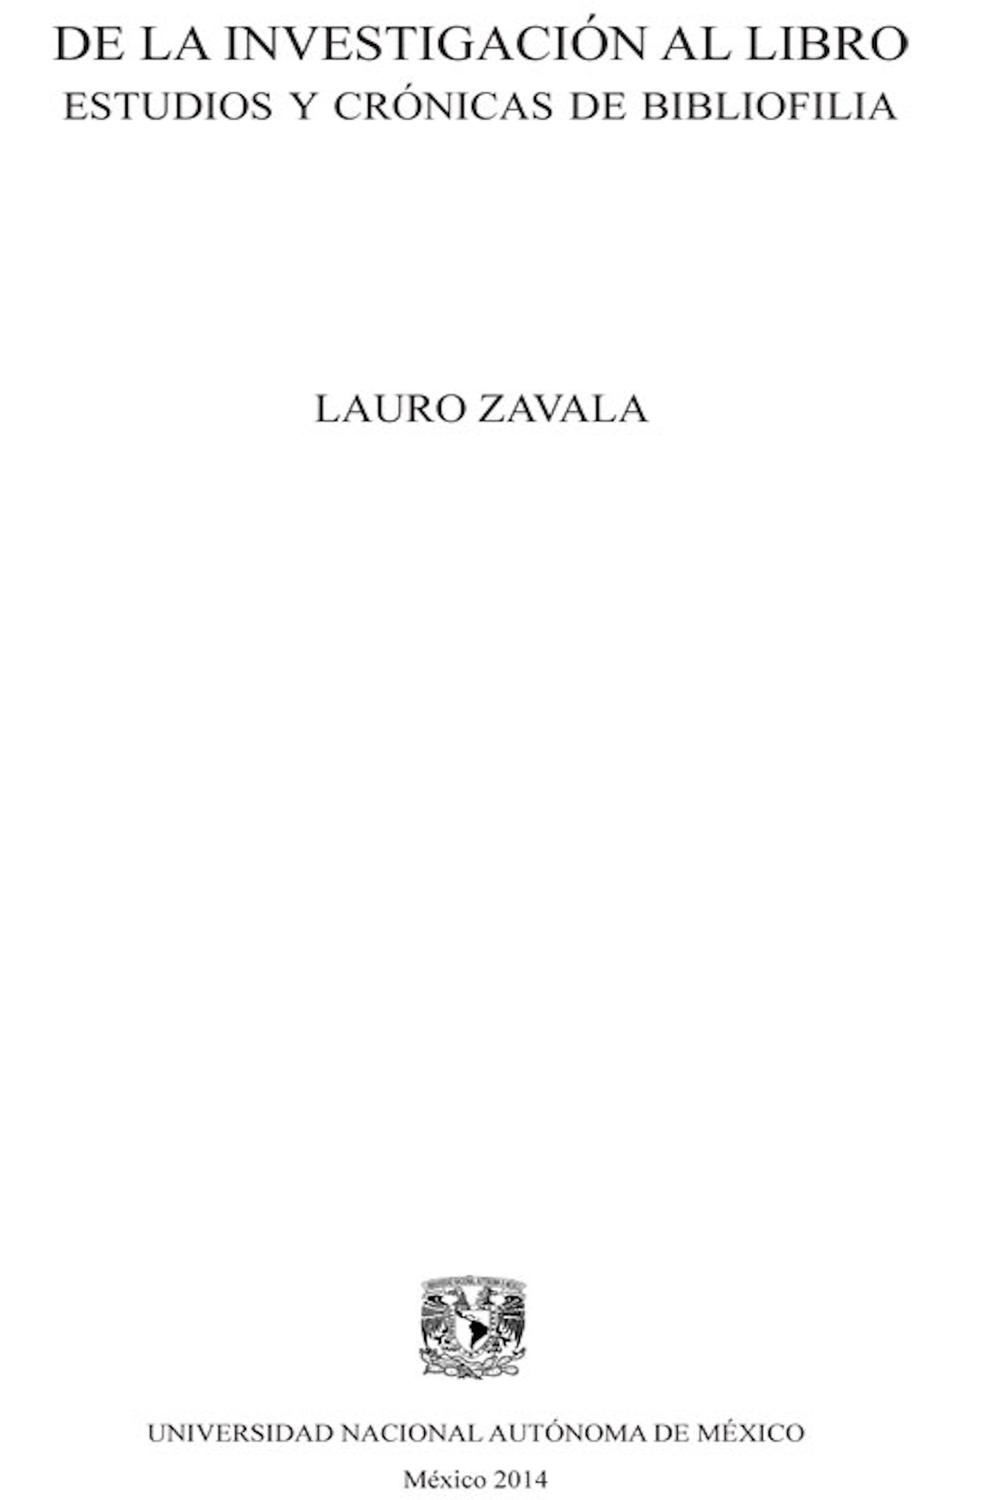 De la investigación al libro - Lauro Zavala